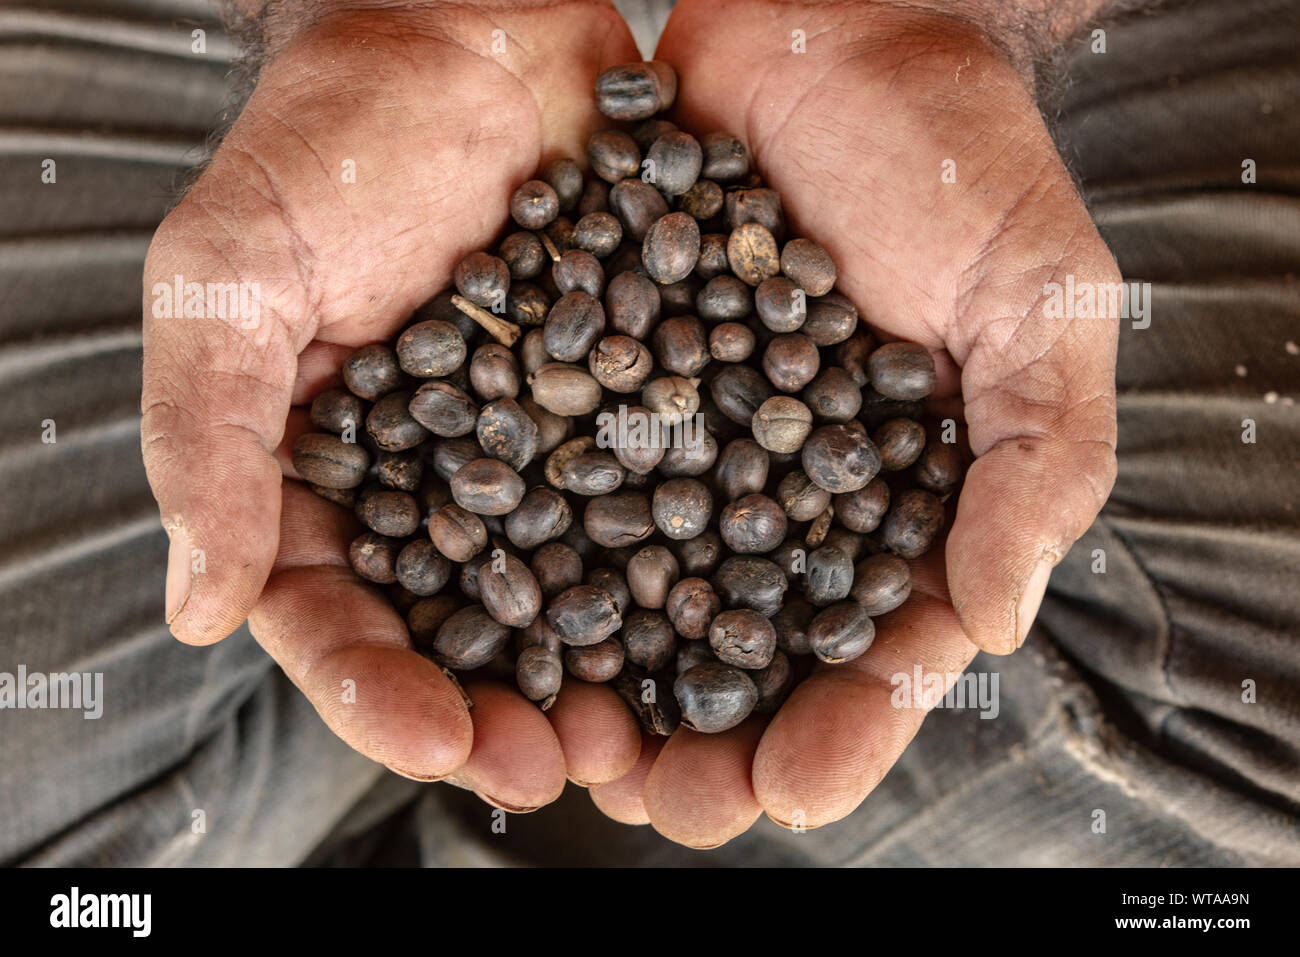 Las manos llenas de semillas de café brasileño Foto de stock